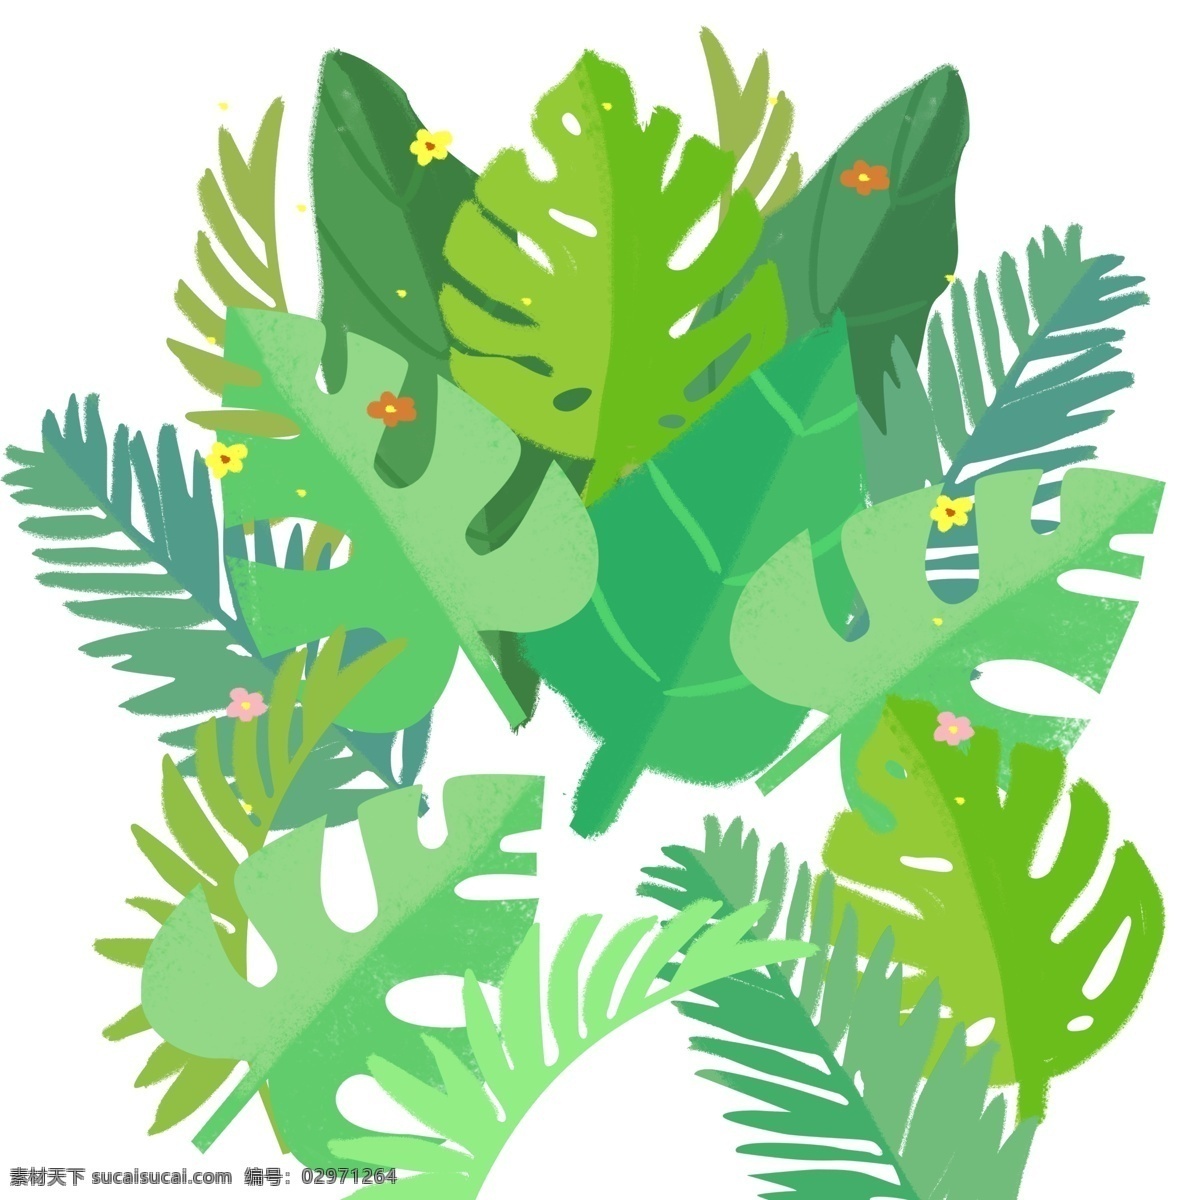 堆 绿色 树叶 图案 元素 夏天 绿叶 一堆树叶 绿叶图案 元素设计 创意元素 手绘元素 免抠元素